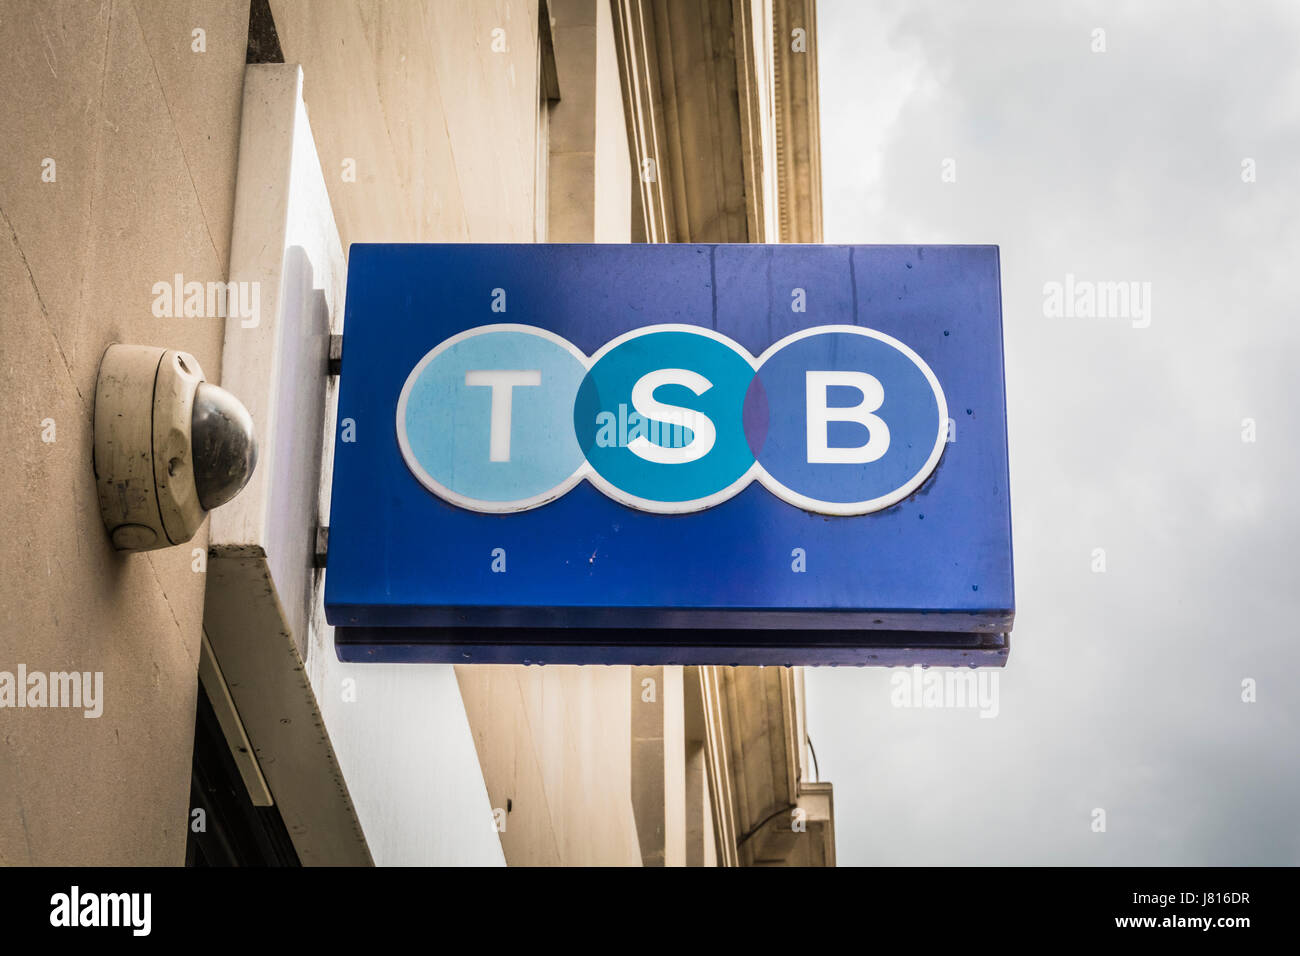 Un BST bleu (Syndic d'Épargne) sign in London, UK Banque D'Images